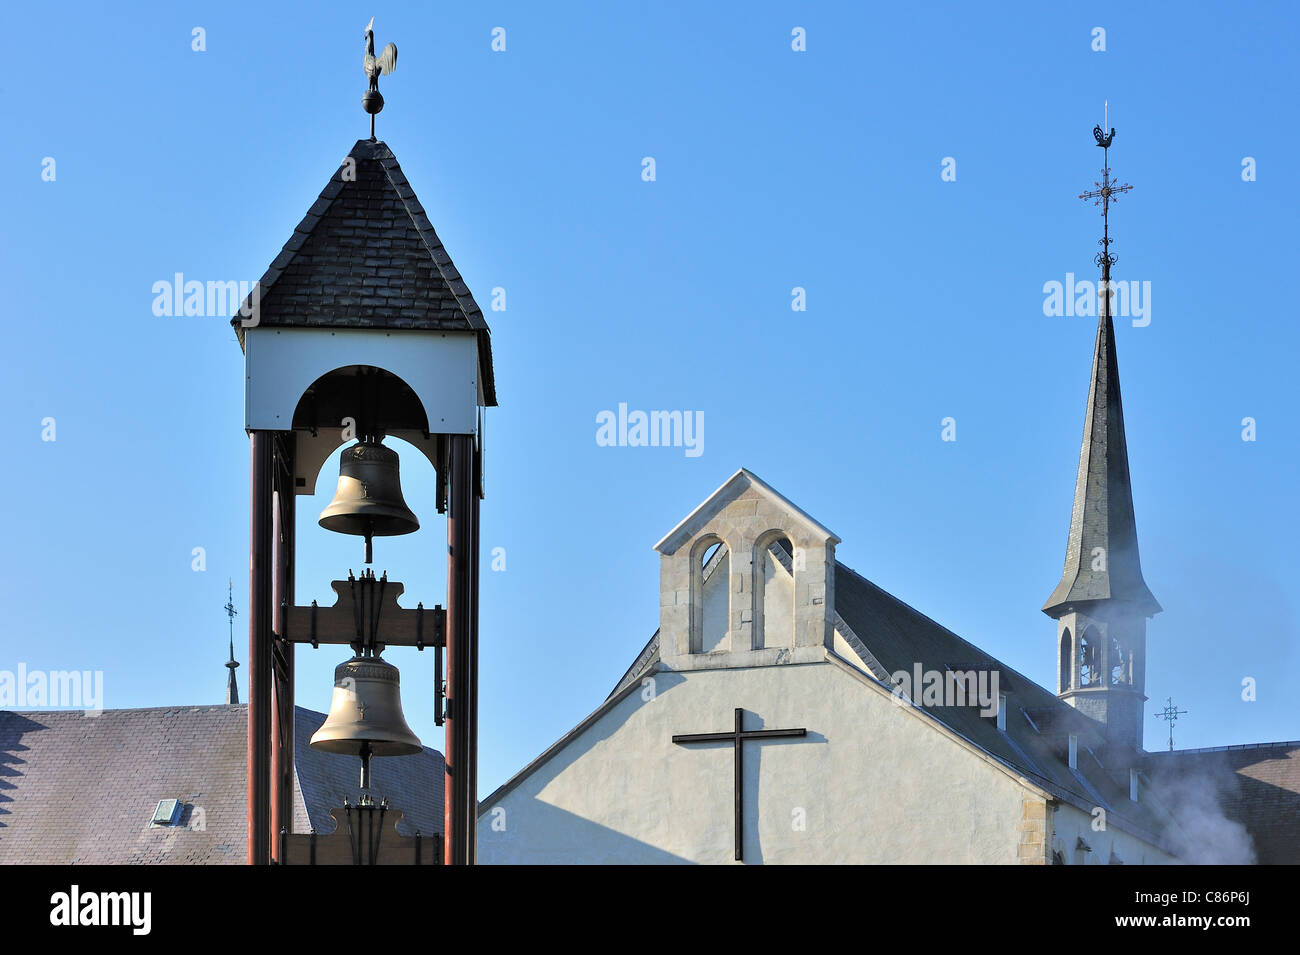 Des cloches de l'Abbaye Trappiste de Rochefort / Abbaye de Notre-Dame de Saint-Rémy, Ardennes, Belgique Banque D'Images